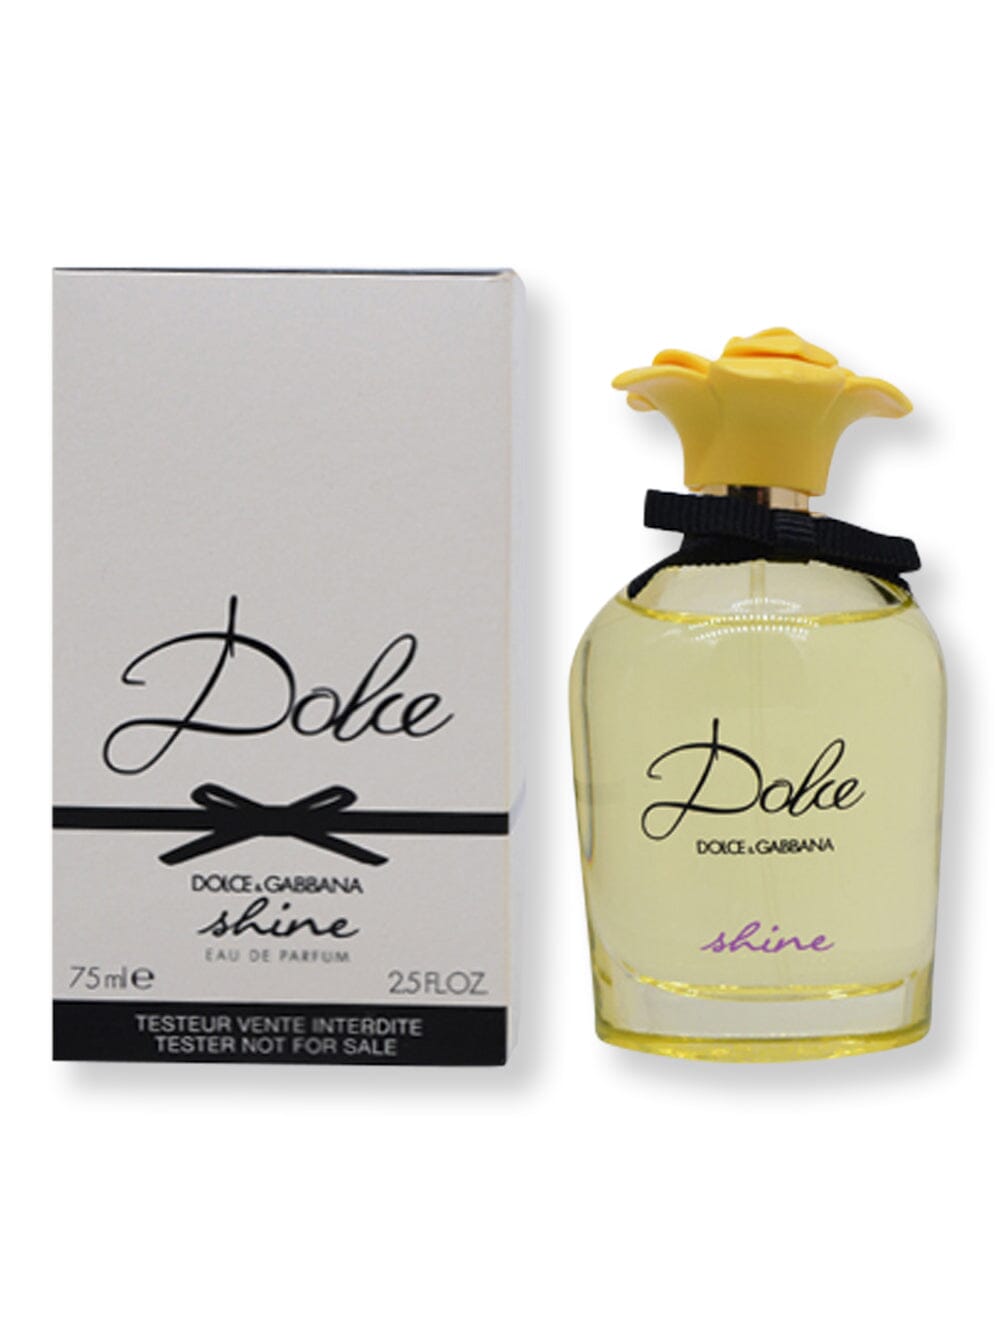 Dolce & Gabbana Dolce & Gabbana Dolce Shine EDP Spray Tester 2.5 oz75 ml Perfume 